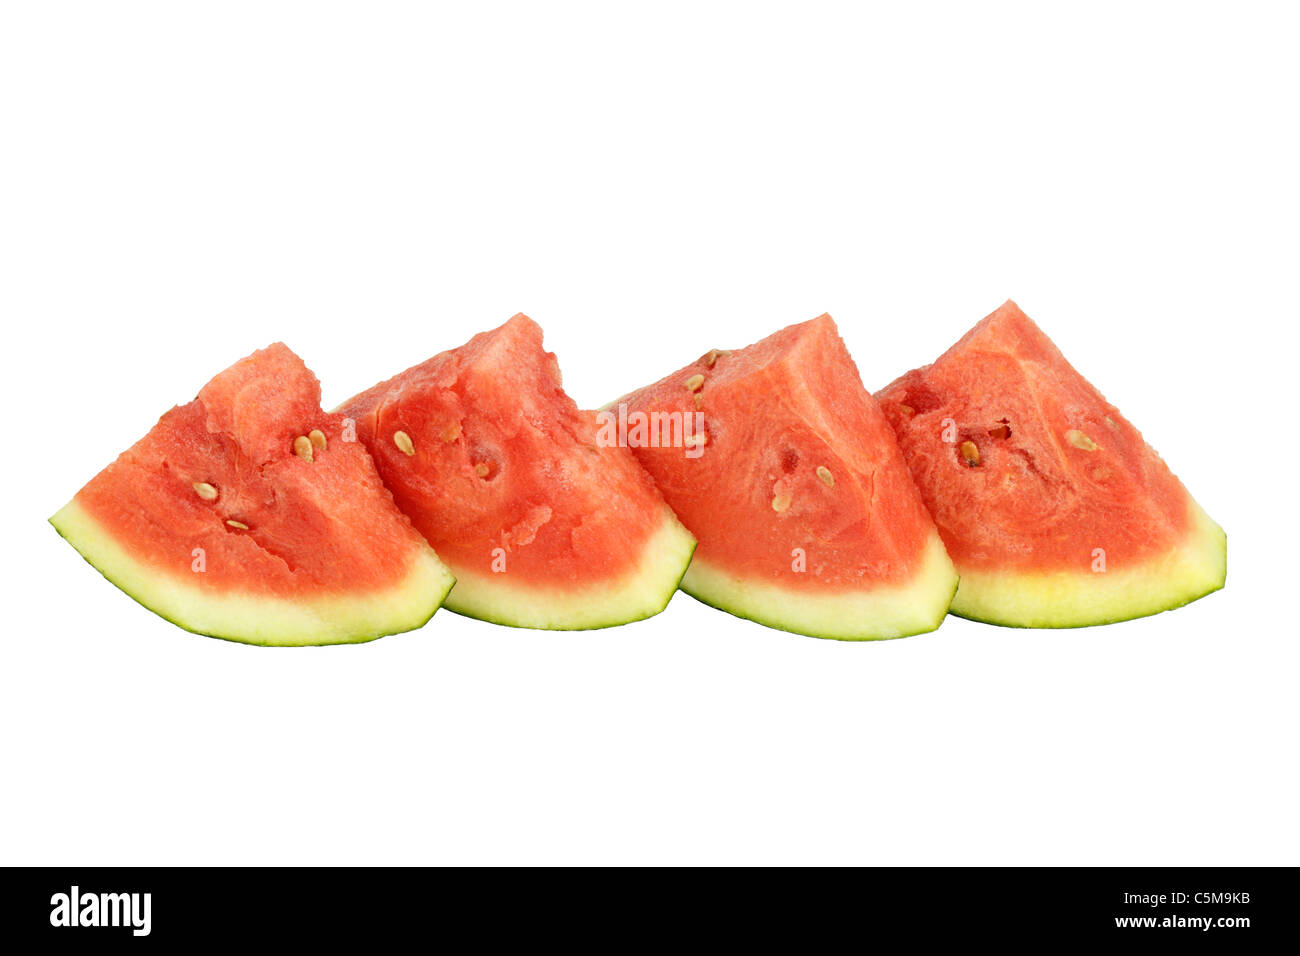 Vier organischen Wassermelone Dreieck Scheiben hochkant nebeneinander auf weißem Hintergrund. Runden Sie vier Viertel rote Wassermelone Scheiben Schale Seite auf weißem ab Stockfoto